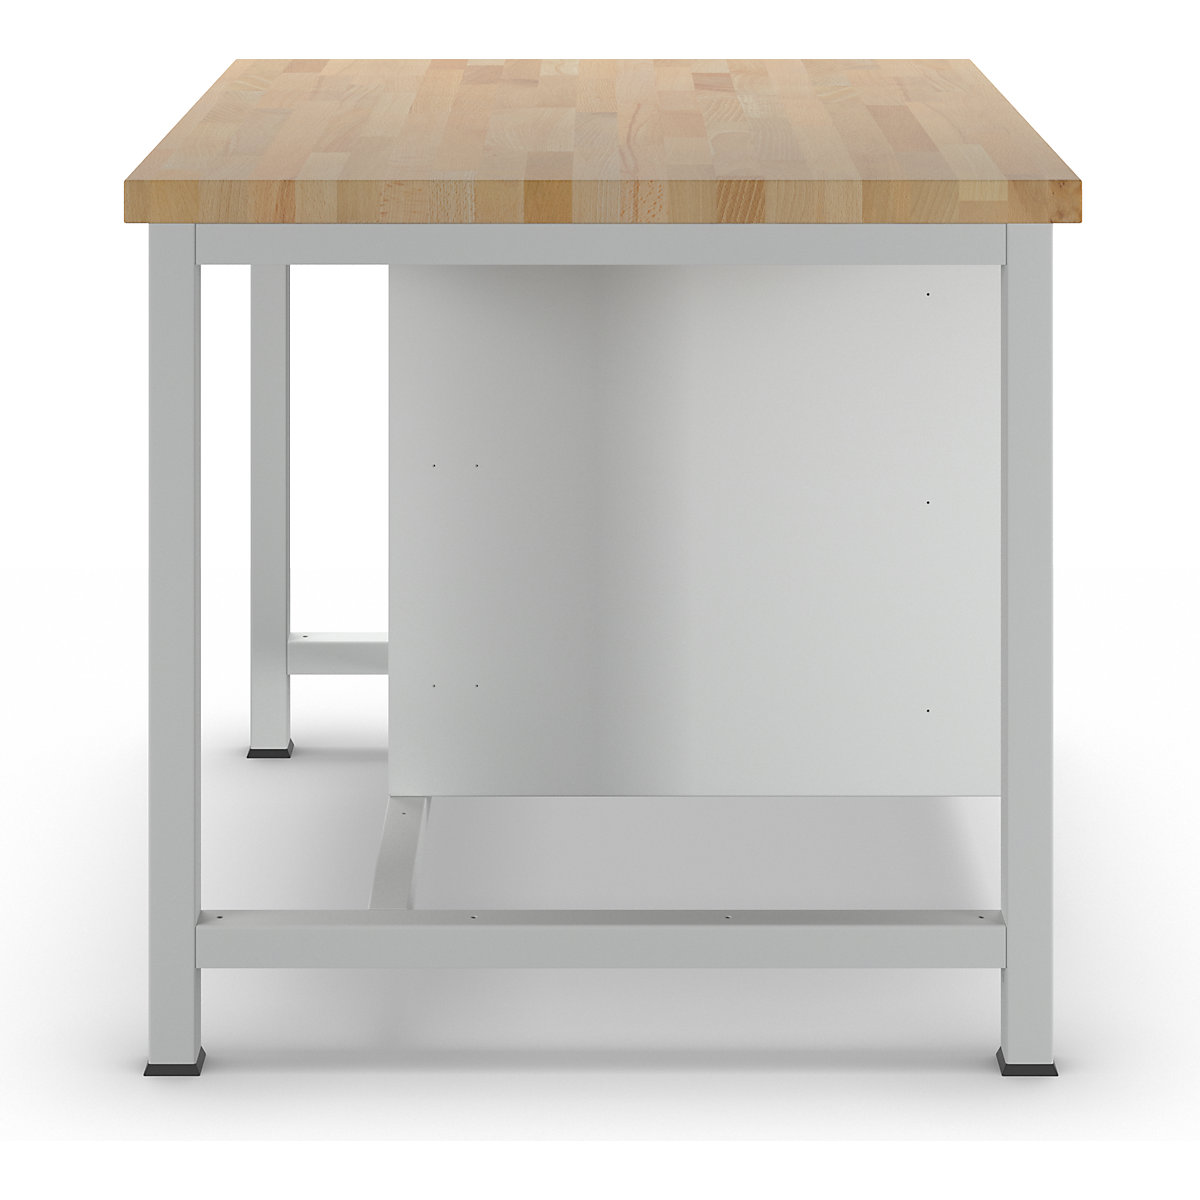 Stół warsztatowy, konstrukcja ramowa – RAU (Zdjęcie produktu 21)-20